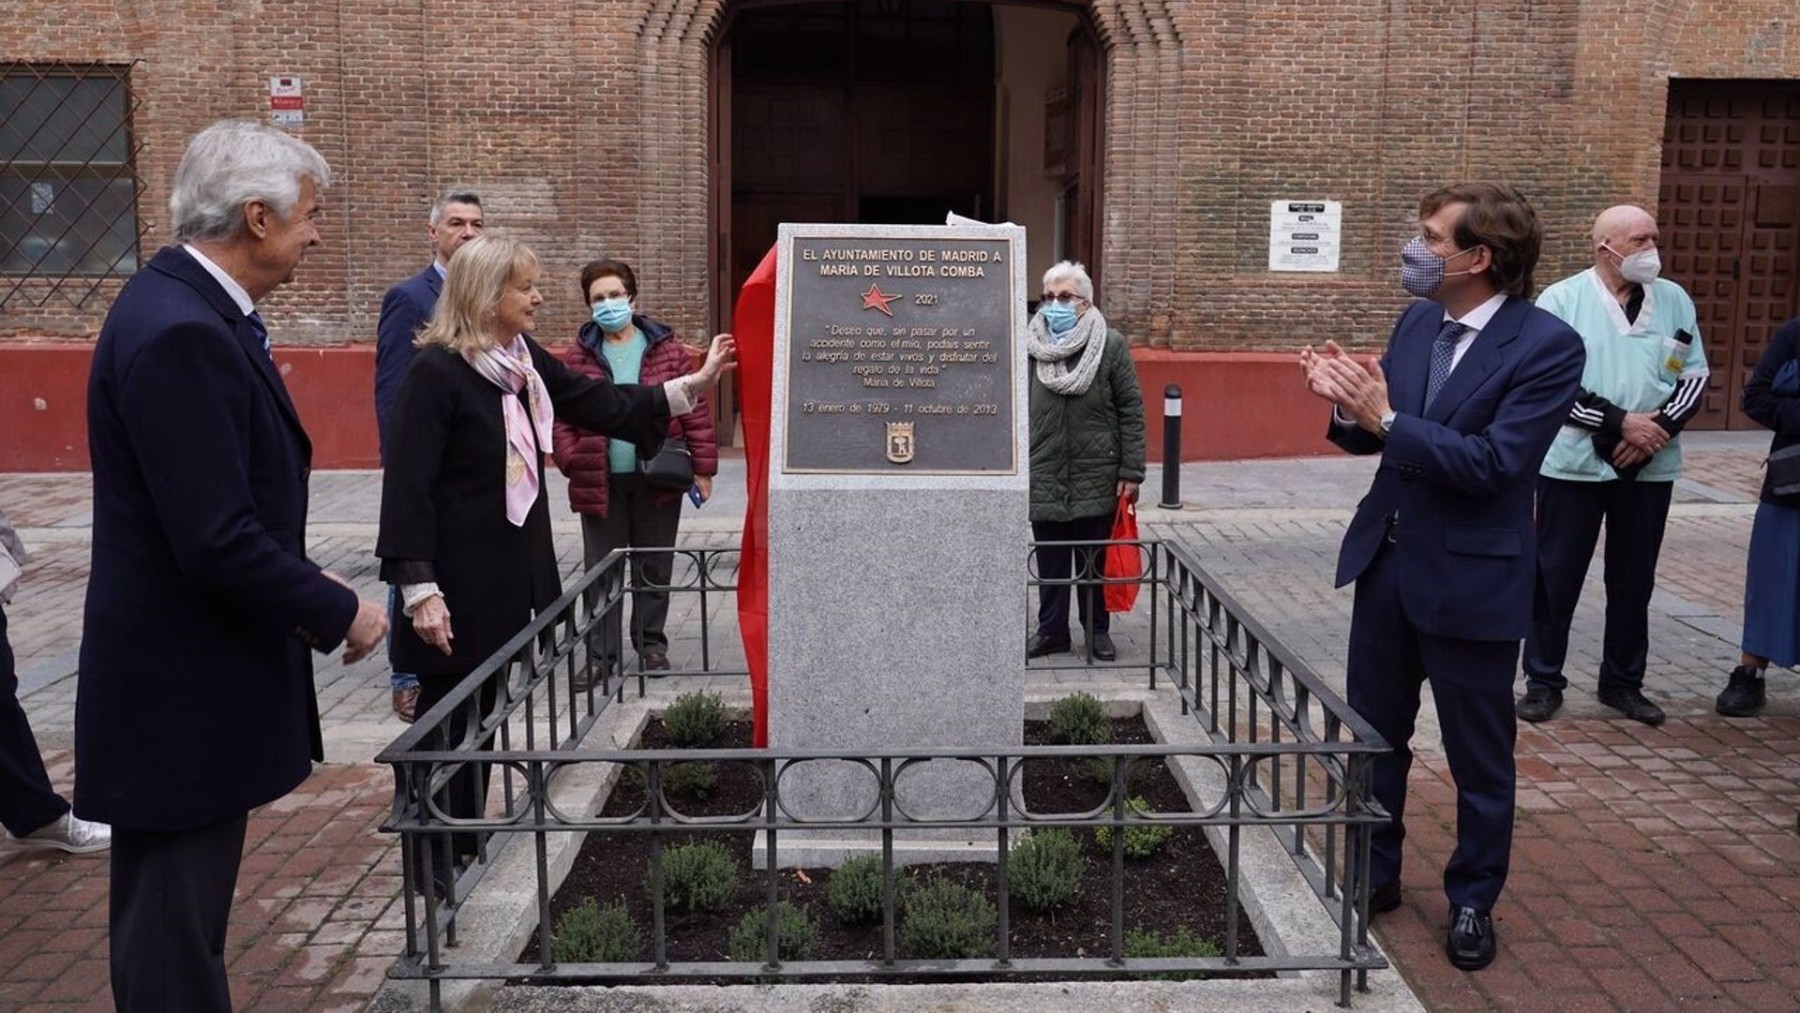 El monolito en homenaje a Maria de Villota. (Europa Press)